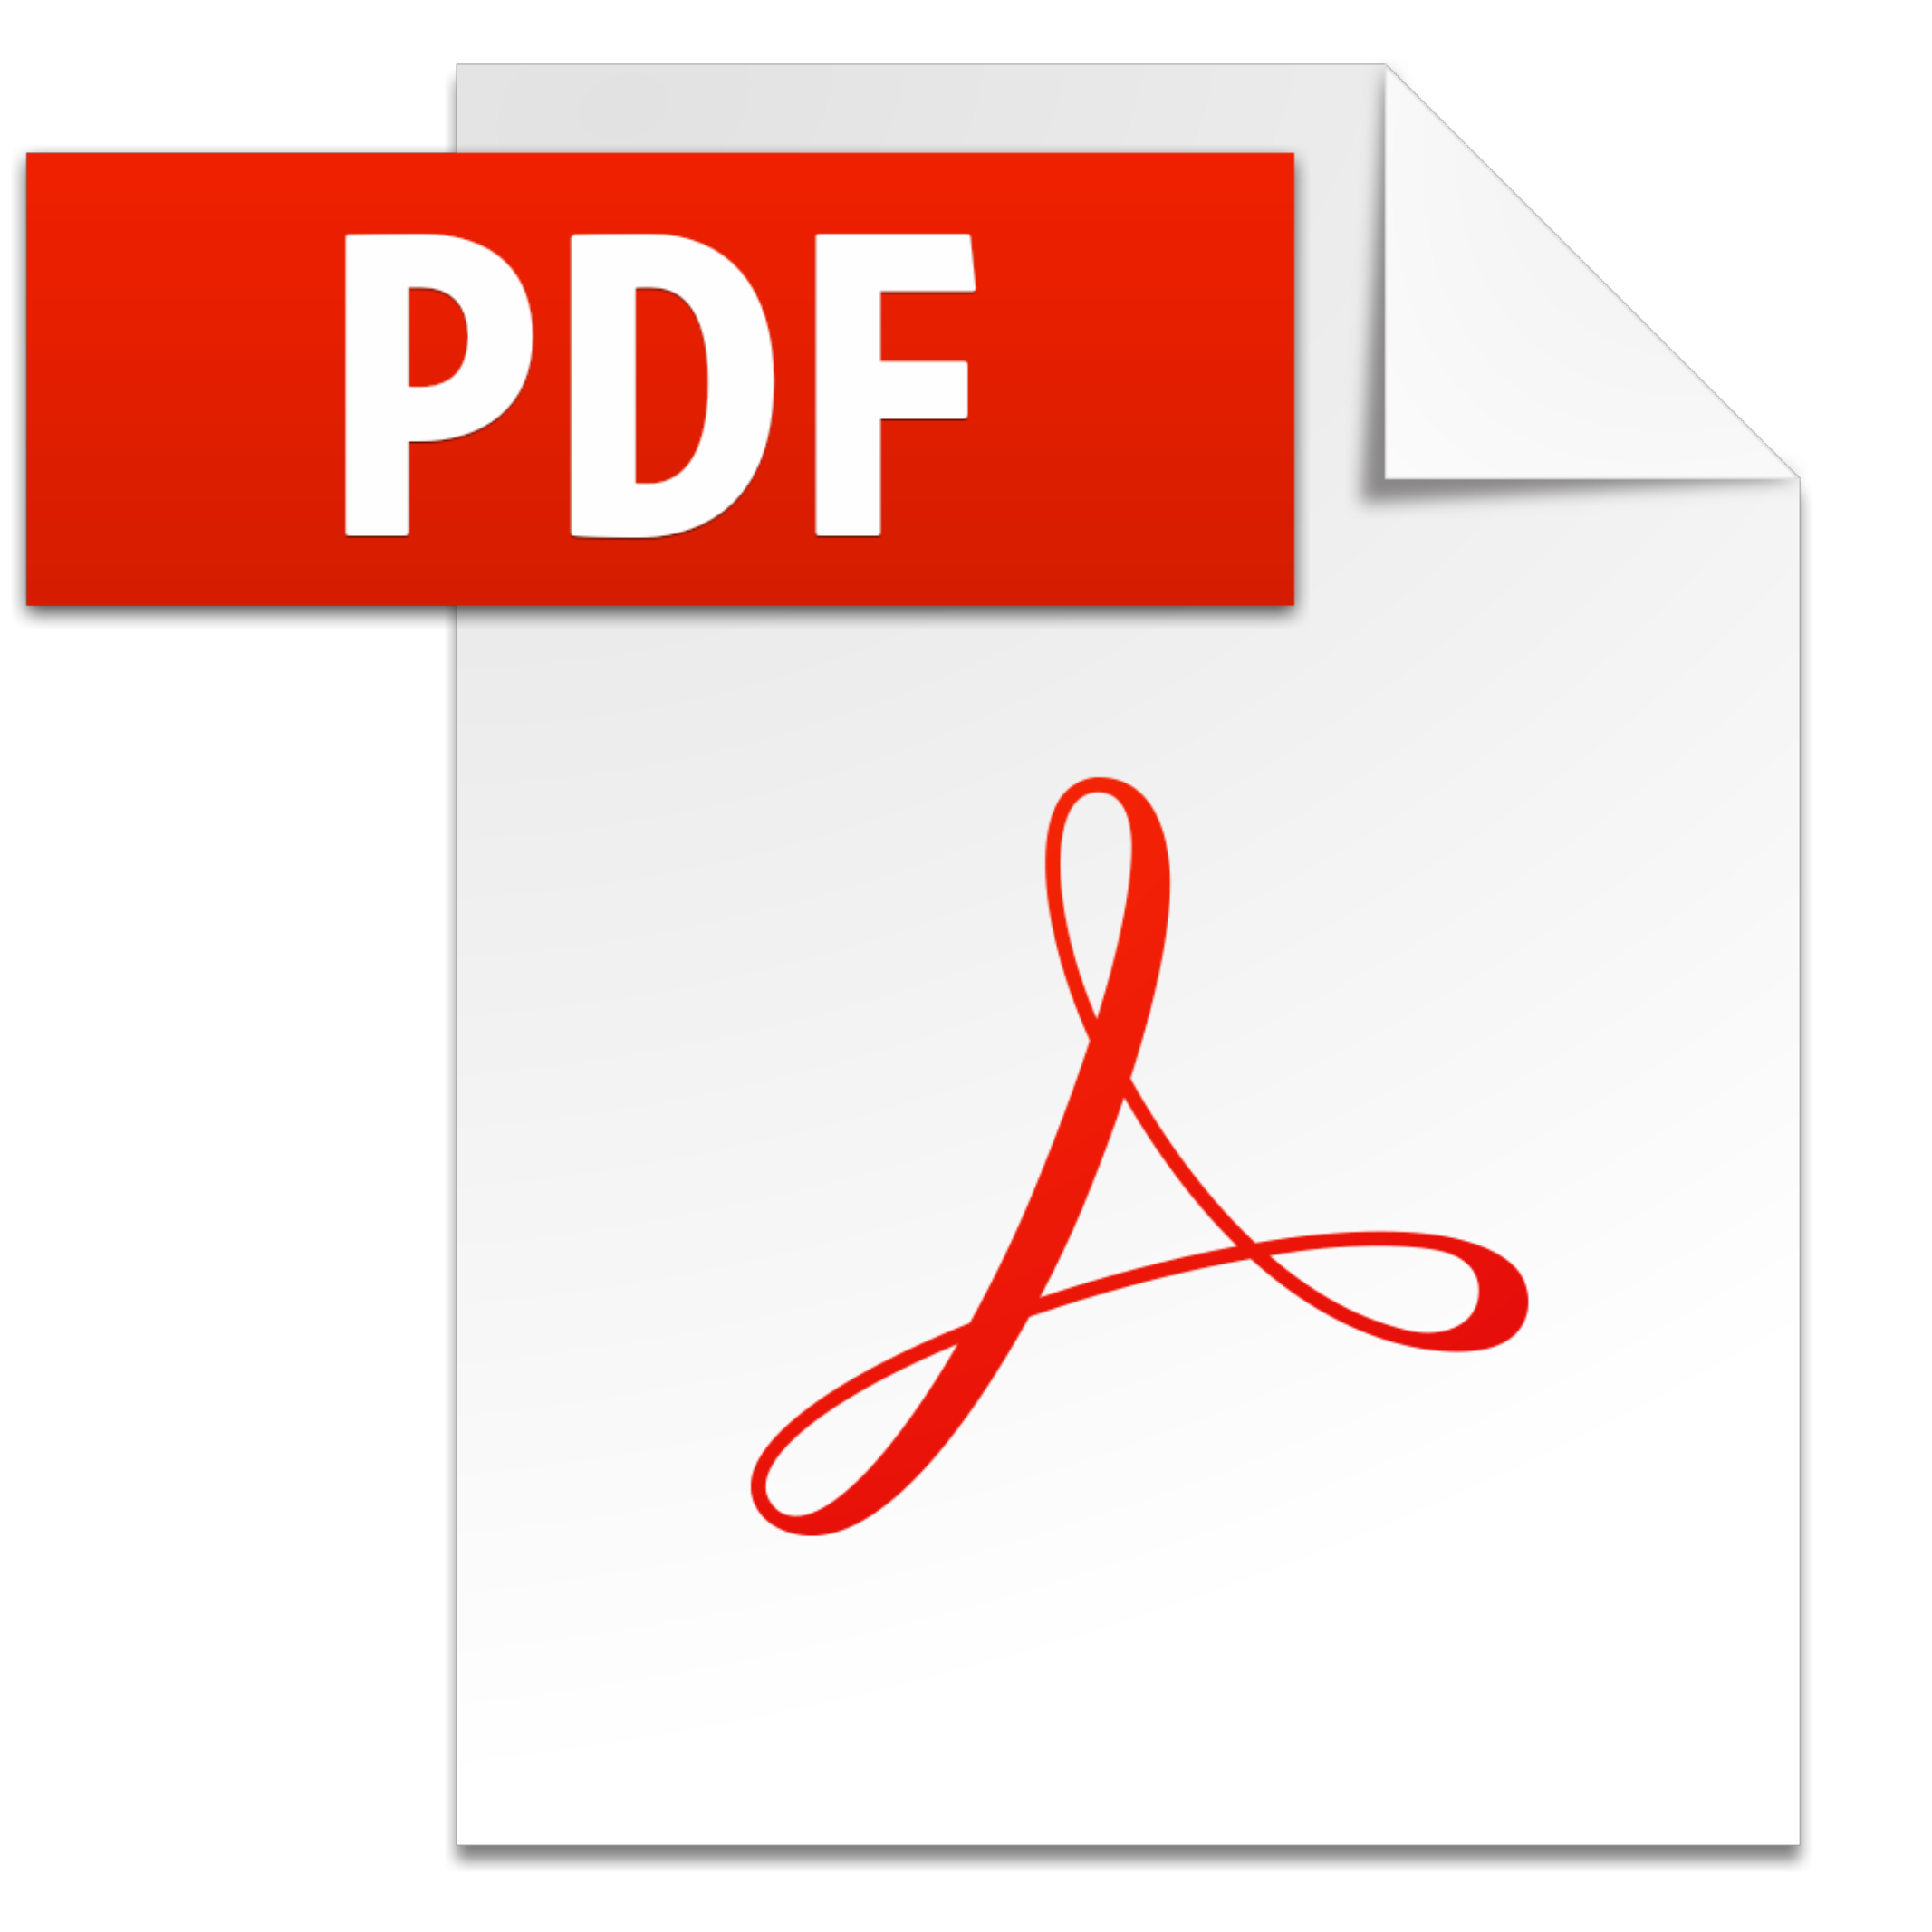 Pdf icon. Логотип pdf. Значок pdf. Pdf файл. Иконка pdf файла.